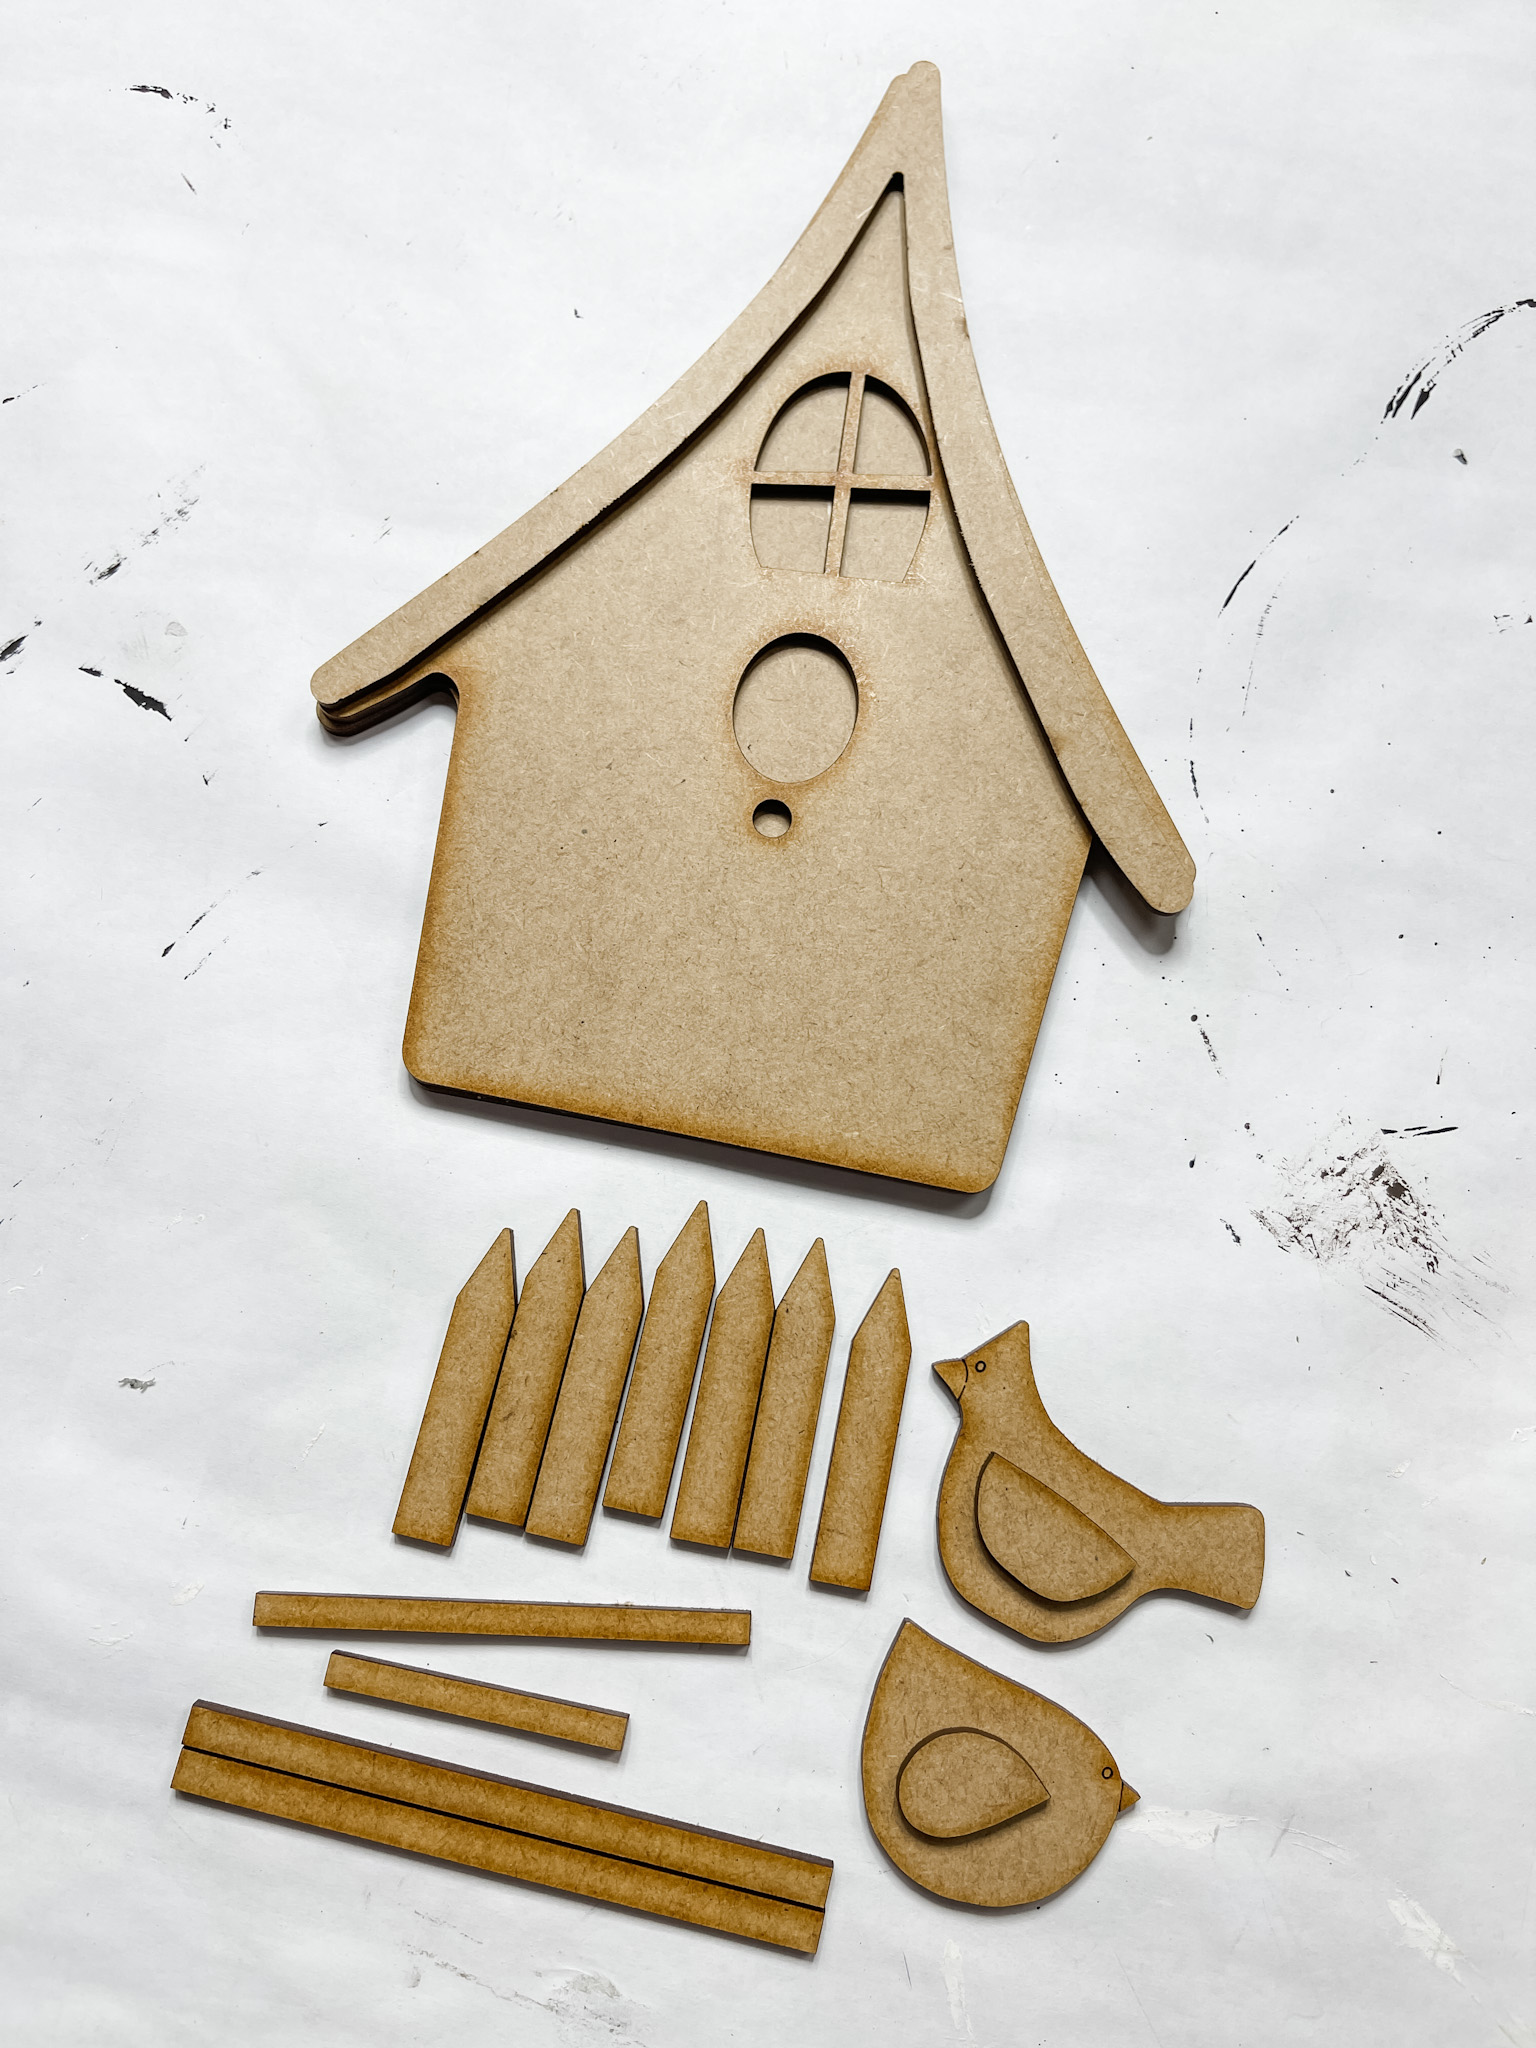 DIY Decorative Birdhouse Craft Kit